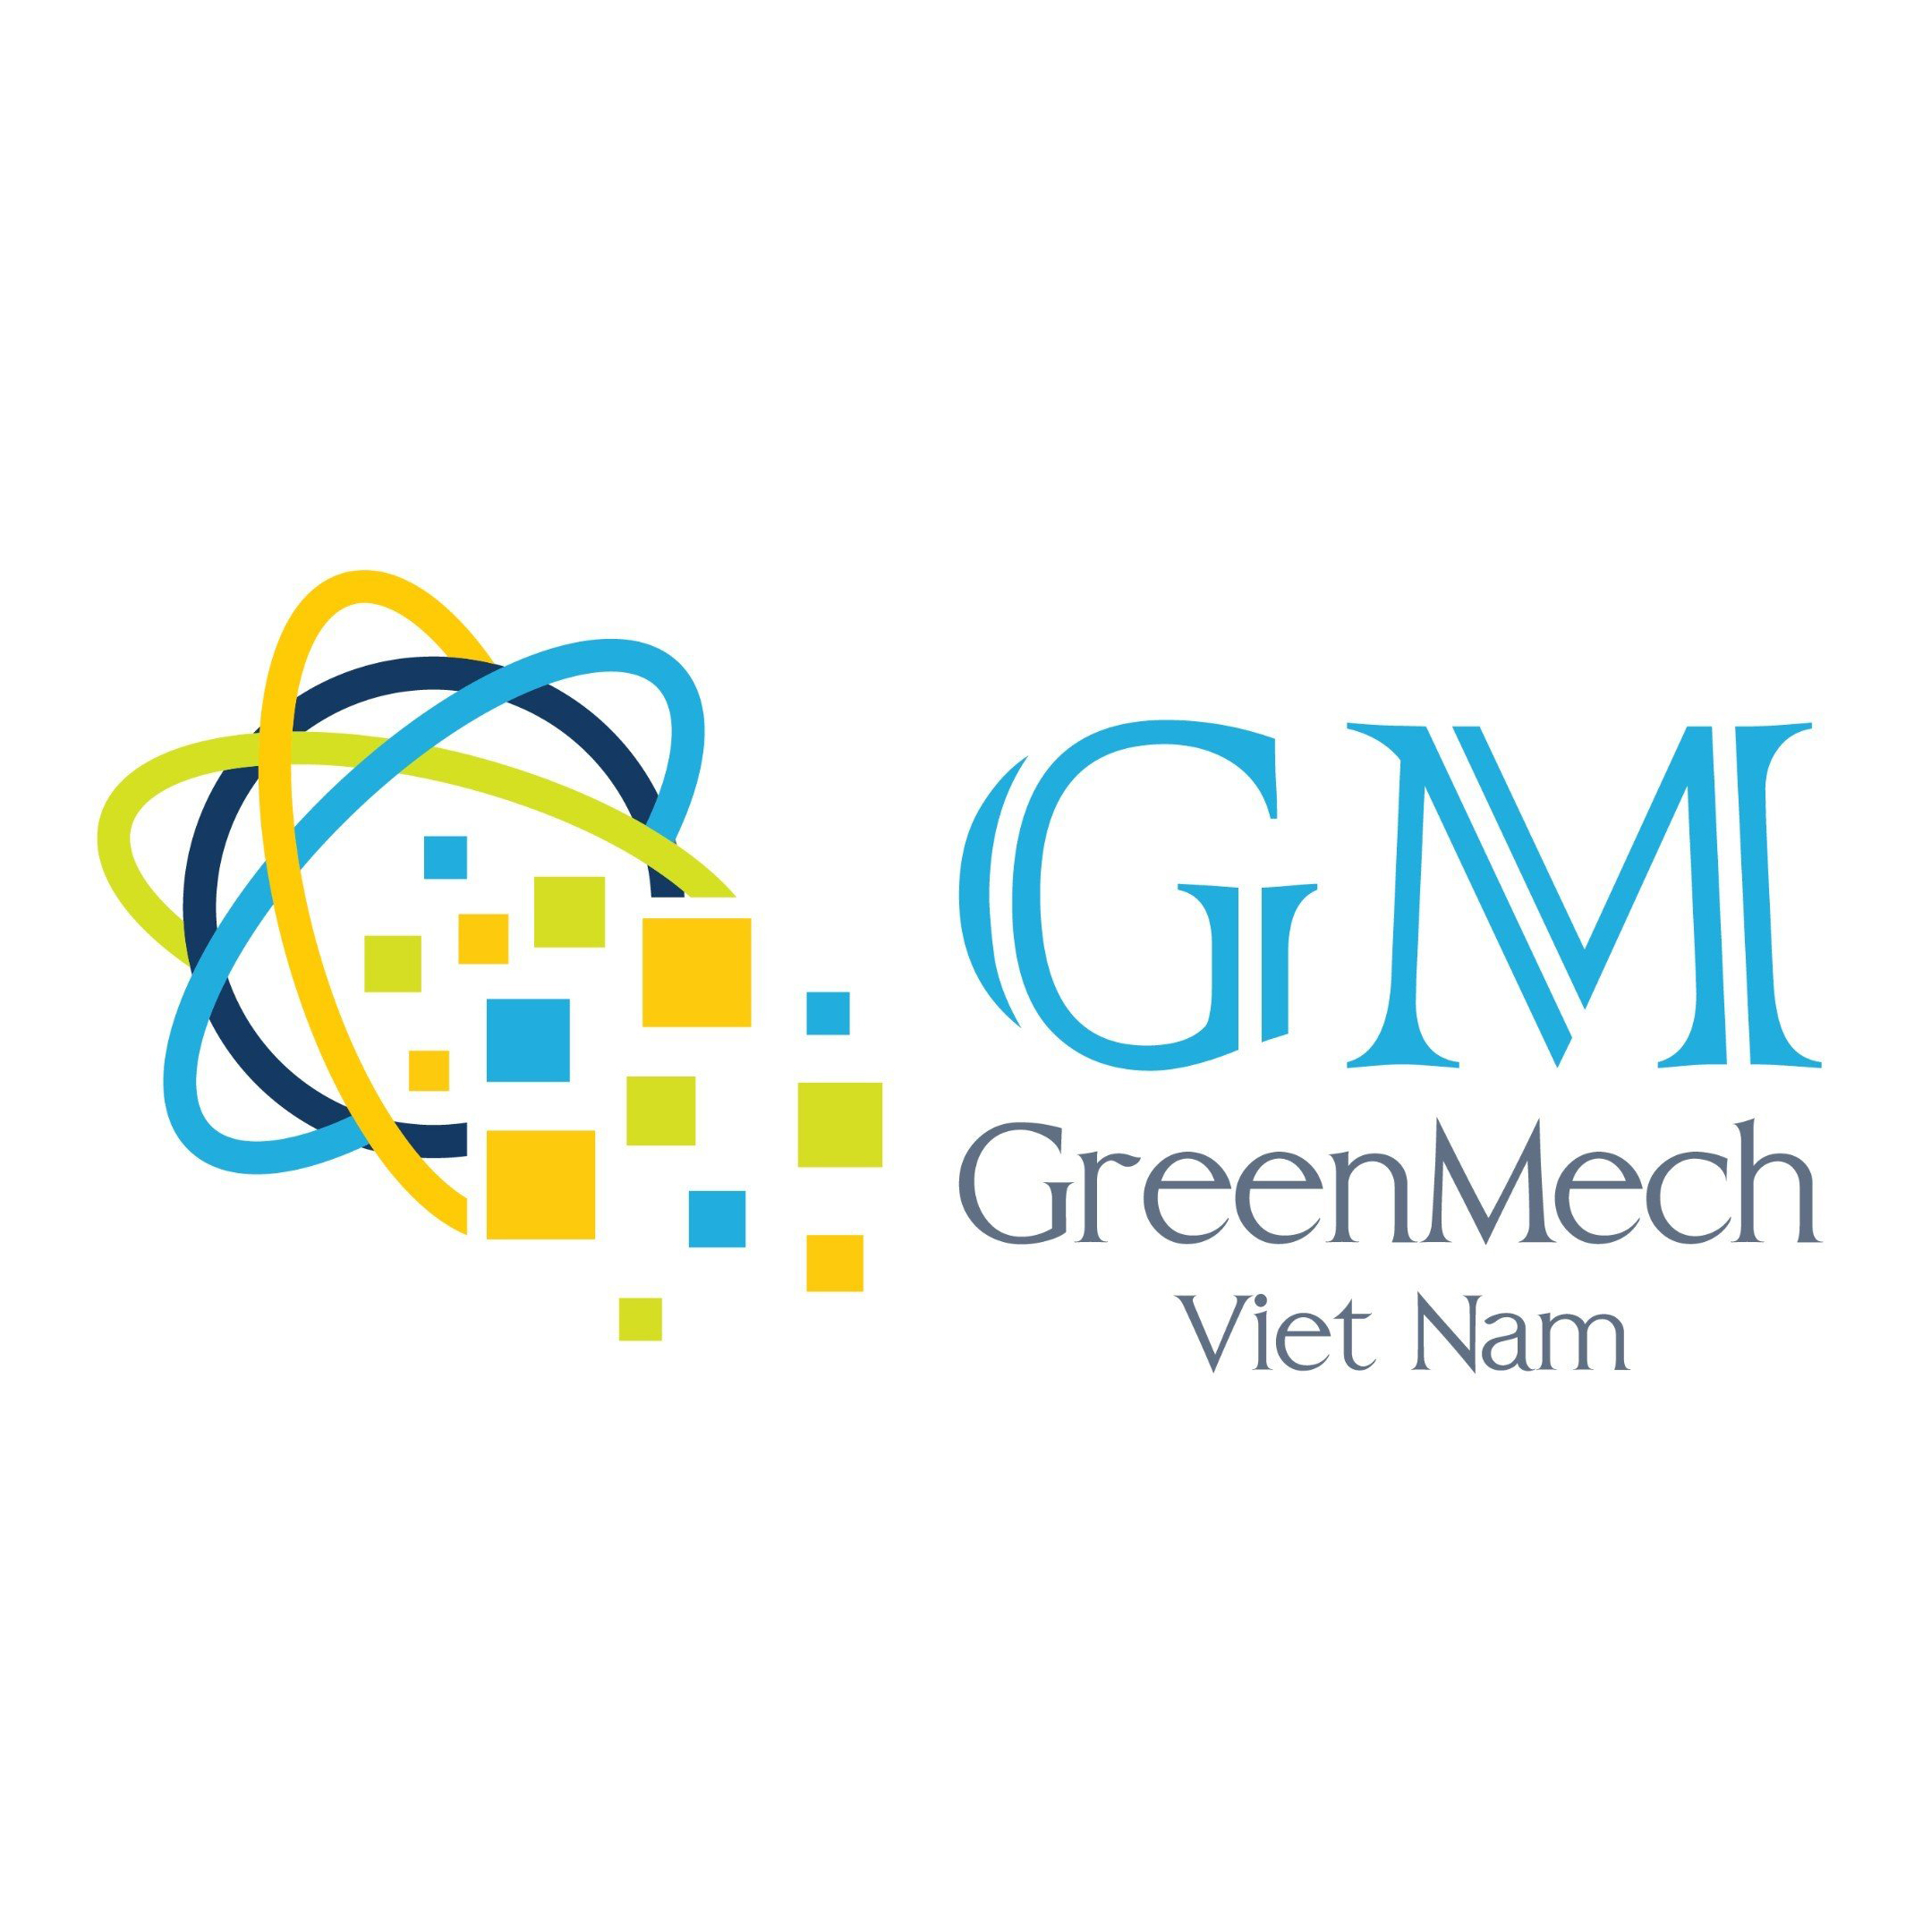 Gian Hàng Greenmech Việt Nam